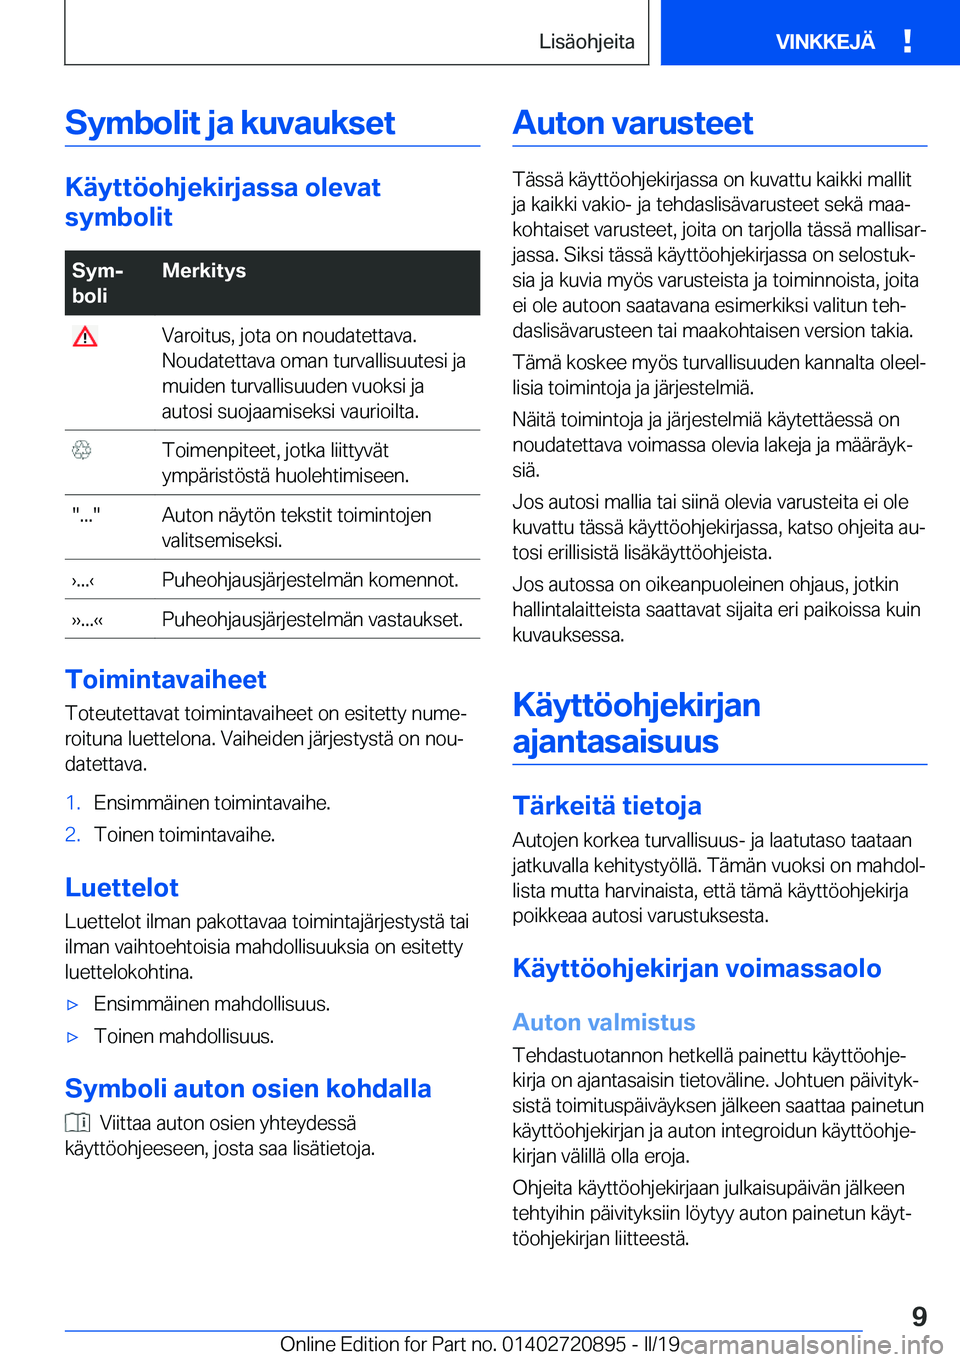 BMW X7 2019  Omistajan Käsikirja (in Finnish) �S�y�m�b�o�l�i�t��j�a��k�u�v�a�u�k�s�e�t
�K�